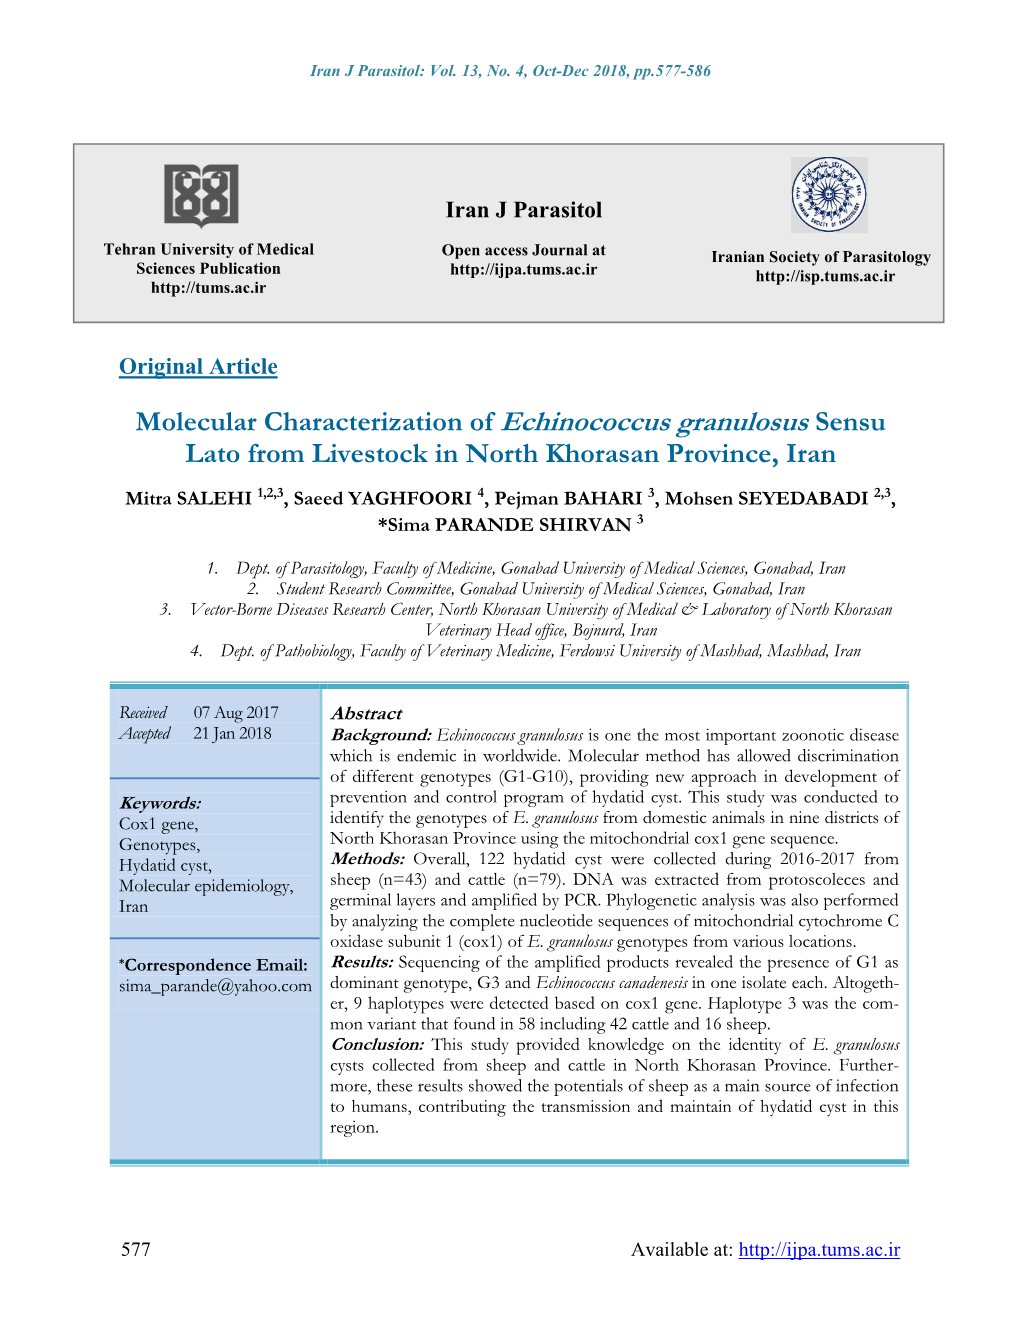 Molecular Characterization of Echinococcus Granulosus Sensu Lato from Livestock in North Khorasan Province, Iran